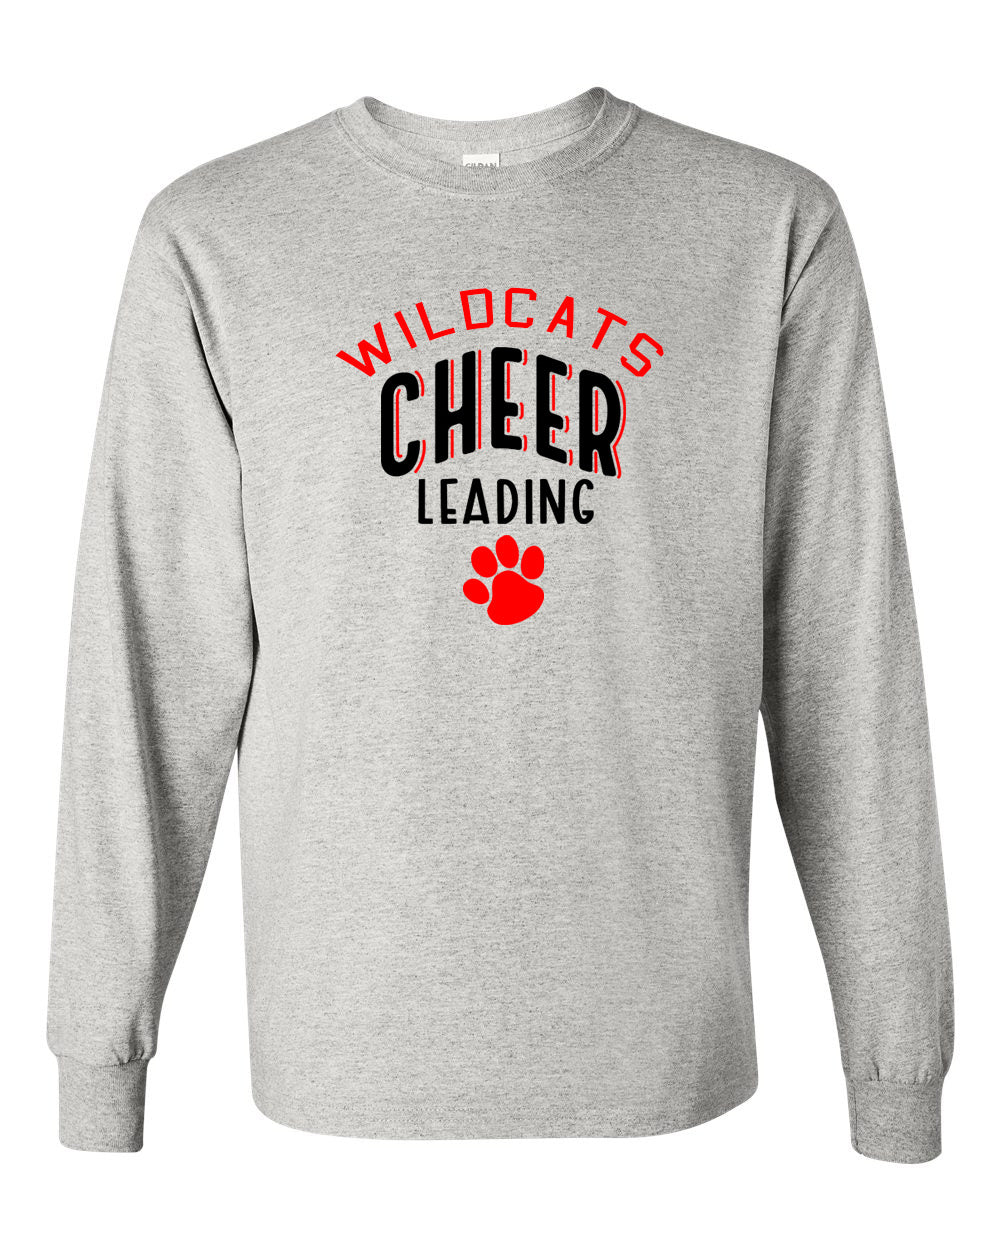 Wildcats Cheer Design 5 Long Sleeve Shirt